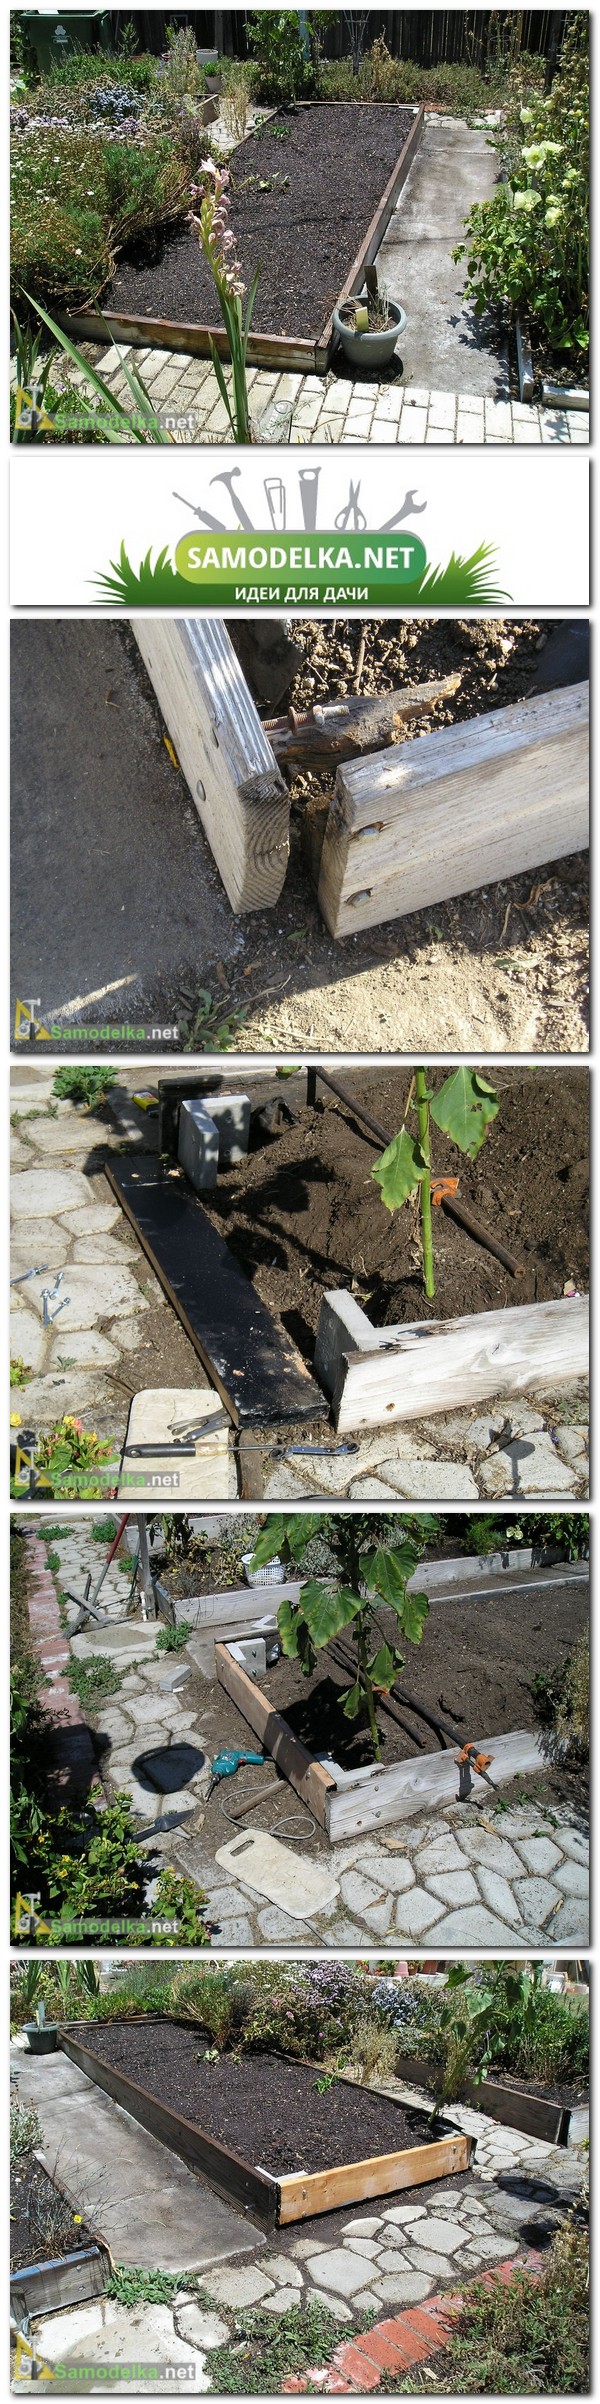 Как сделать короба для грядок на бетонных уголках